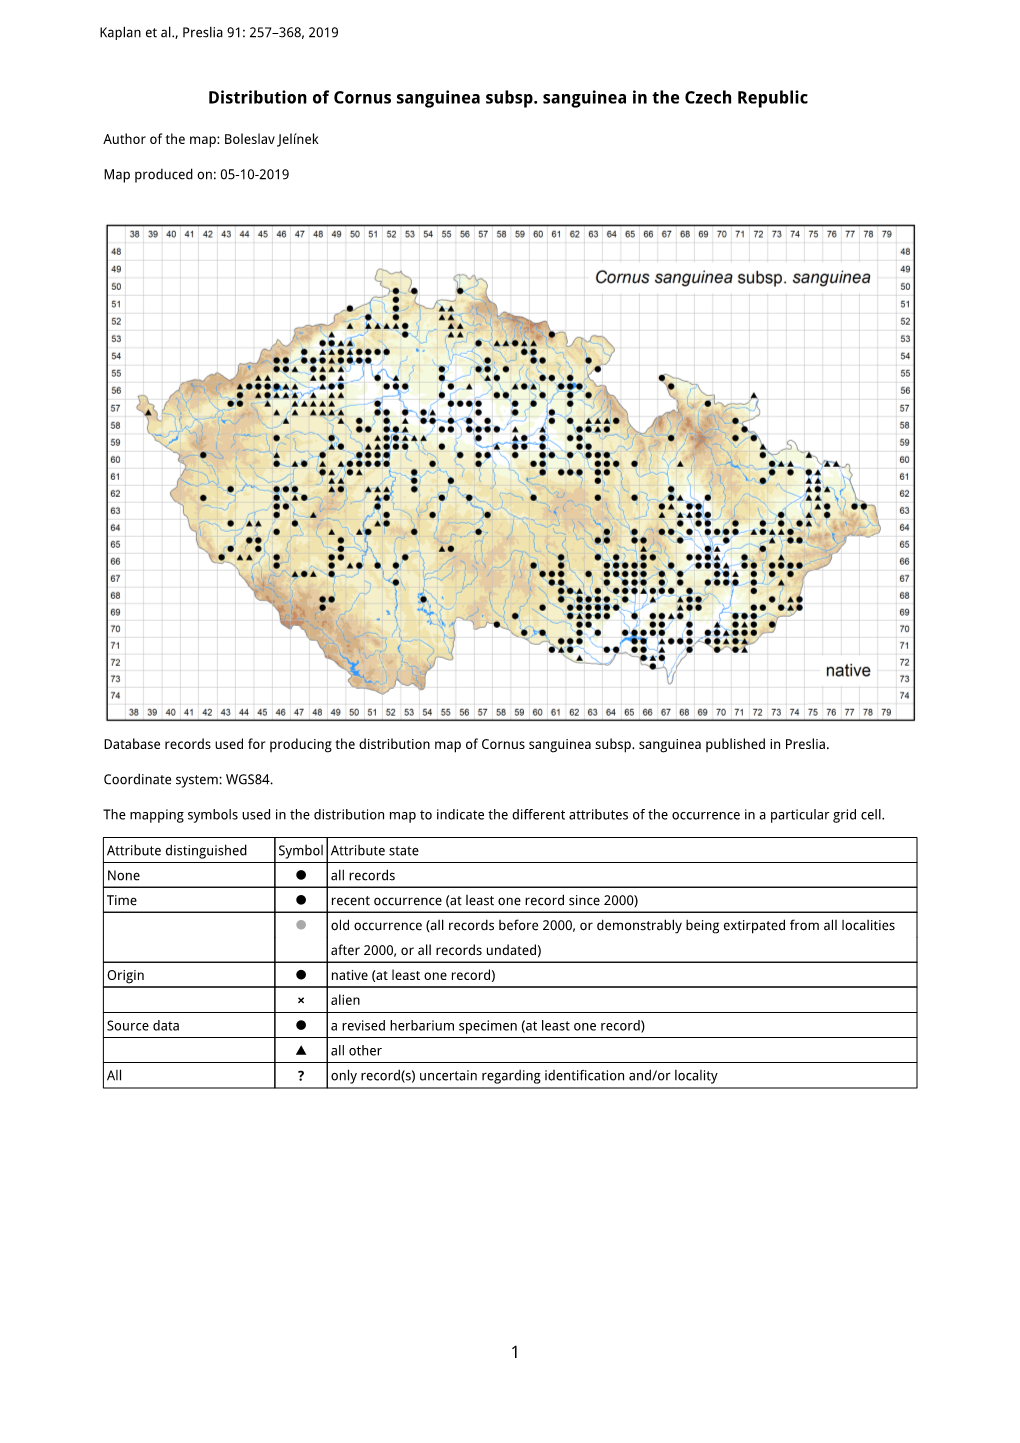 1 Distribution of Cornus Sanguinea Subsp. Sanguinea in the Czech Republic